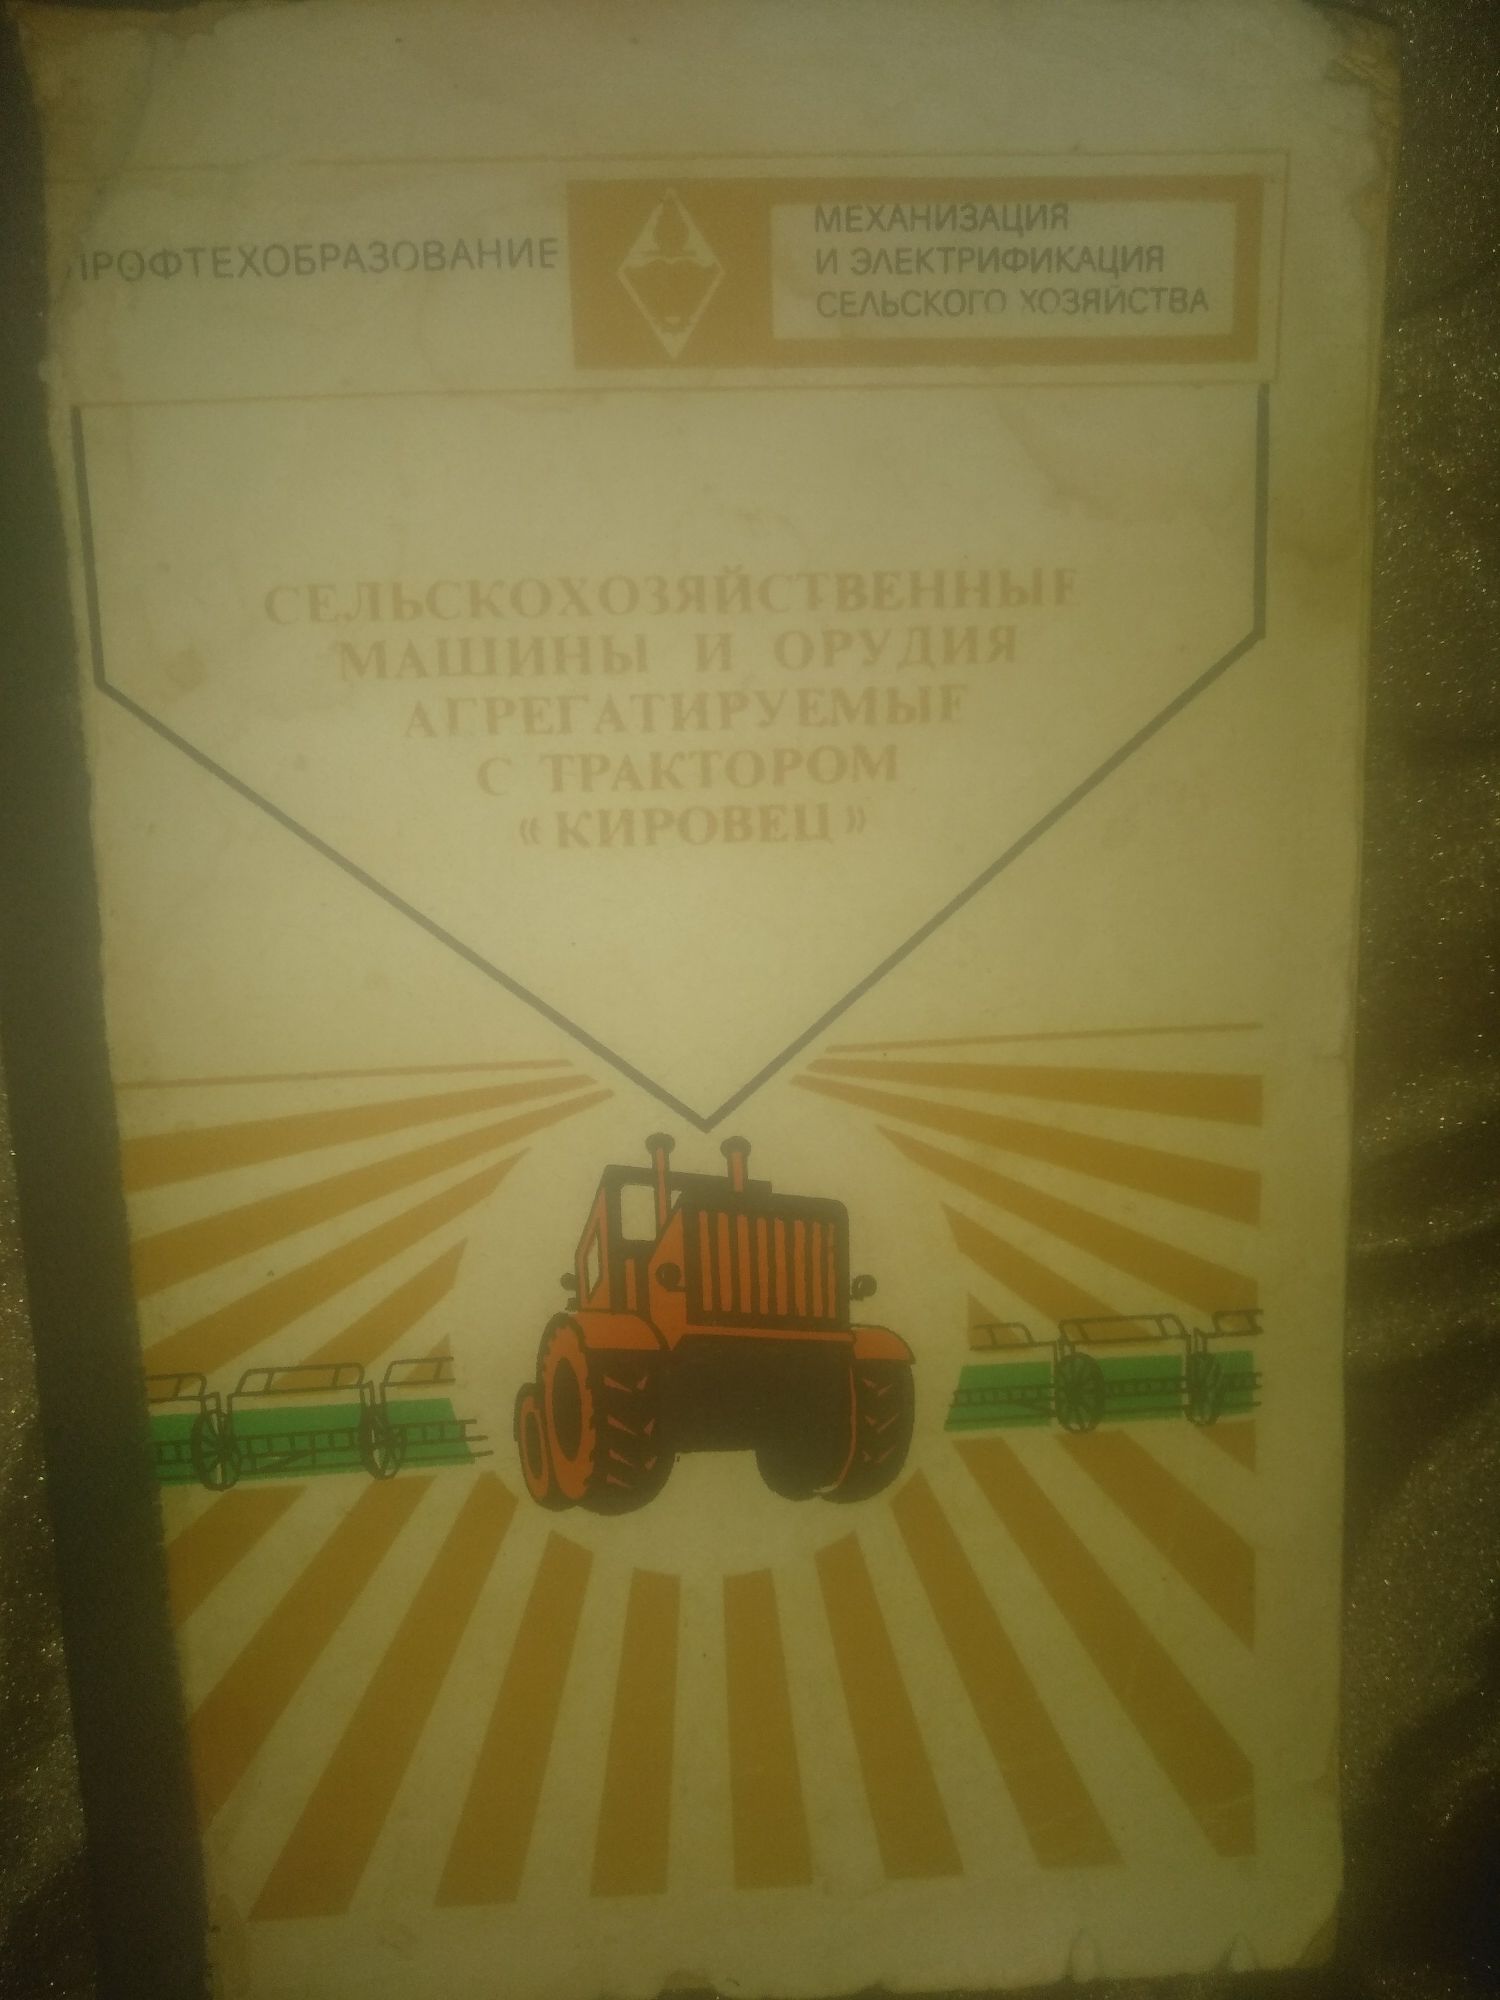 Сельхозмашини агрегатирумие с трактором Кировец